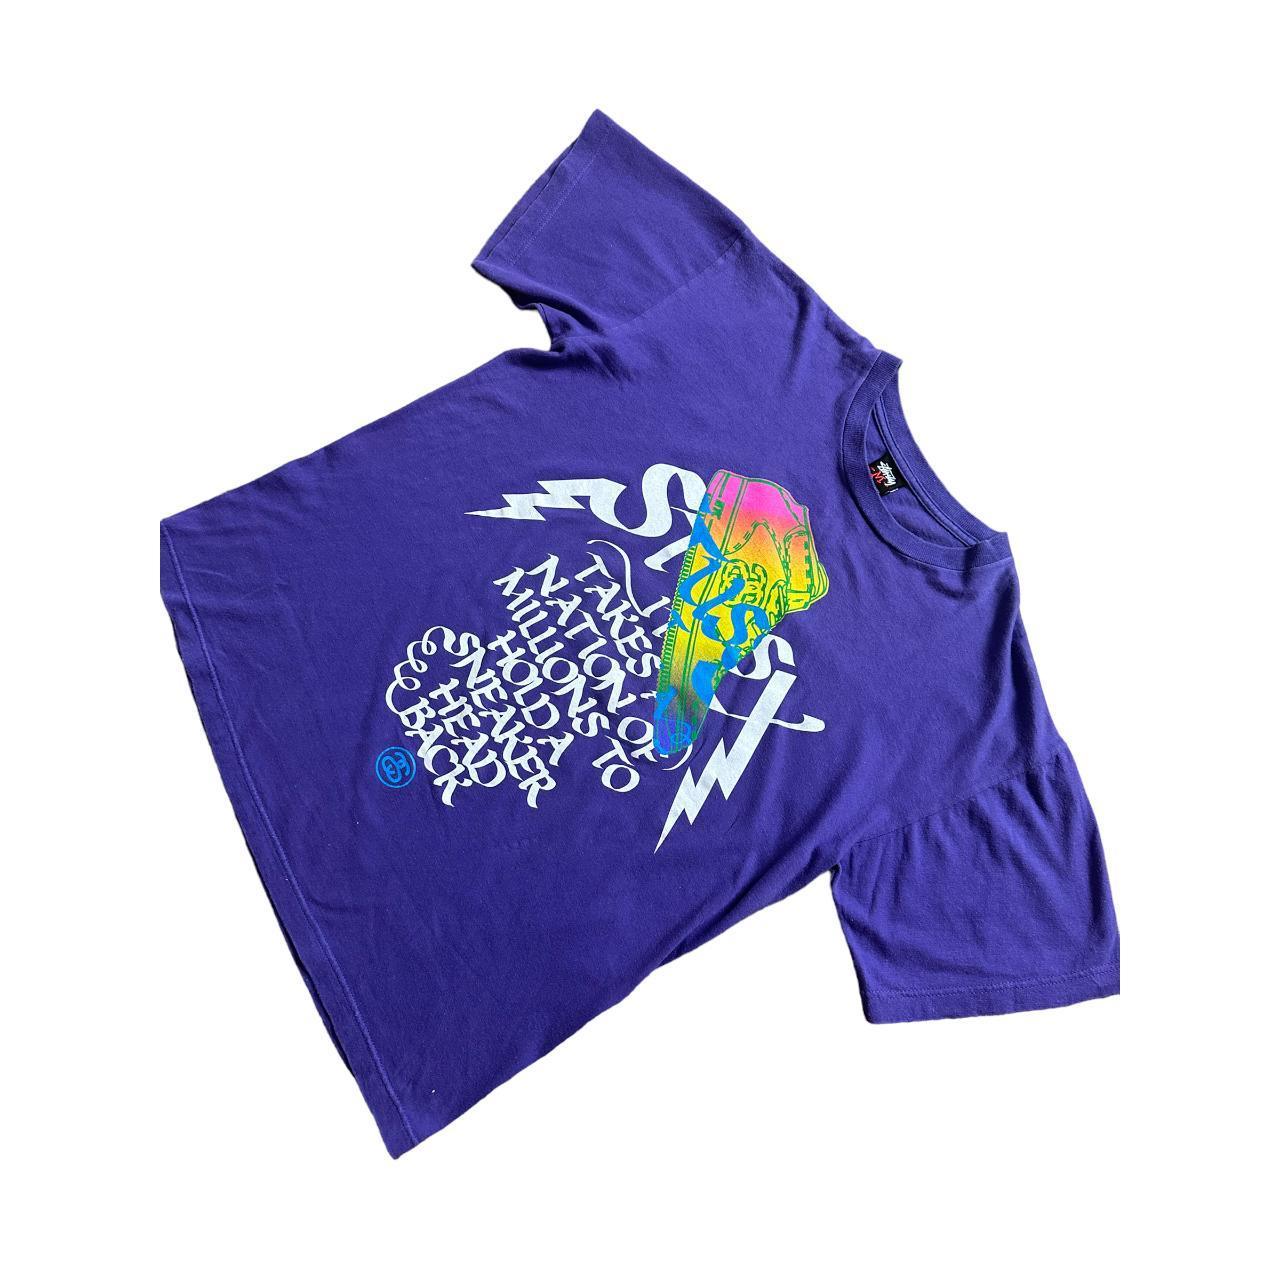 Stussy purple sneaker head Logo T-shirt - Known Source